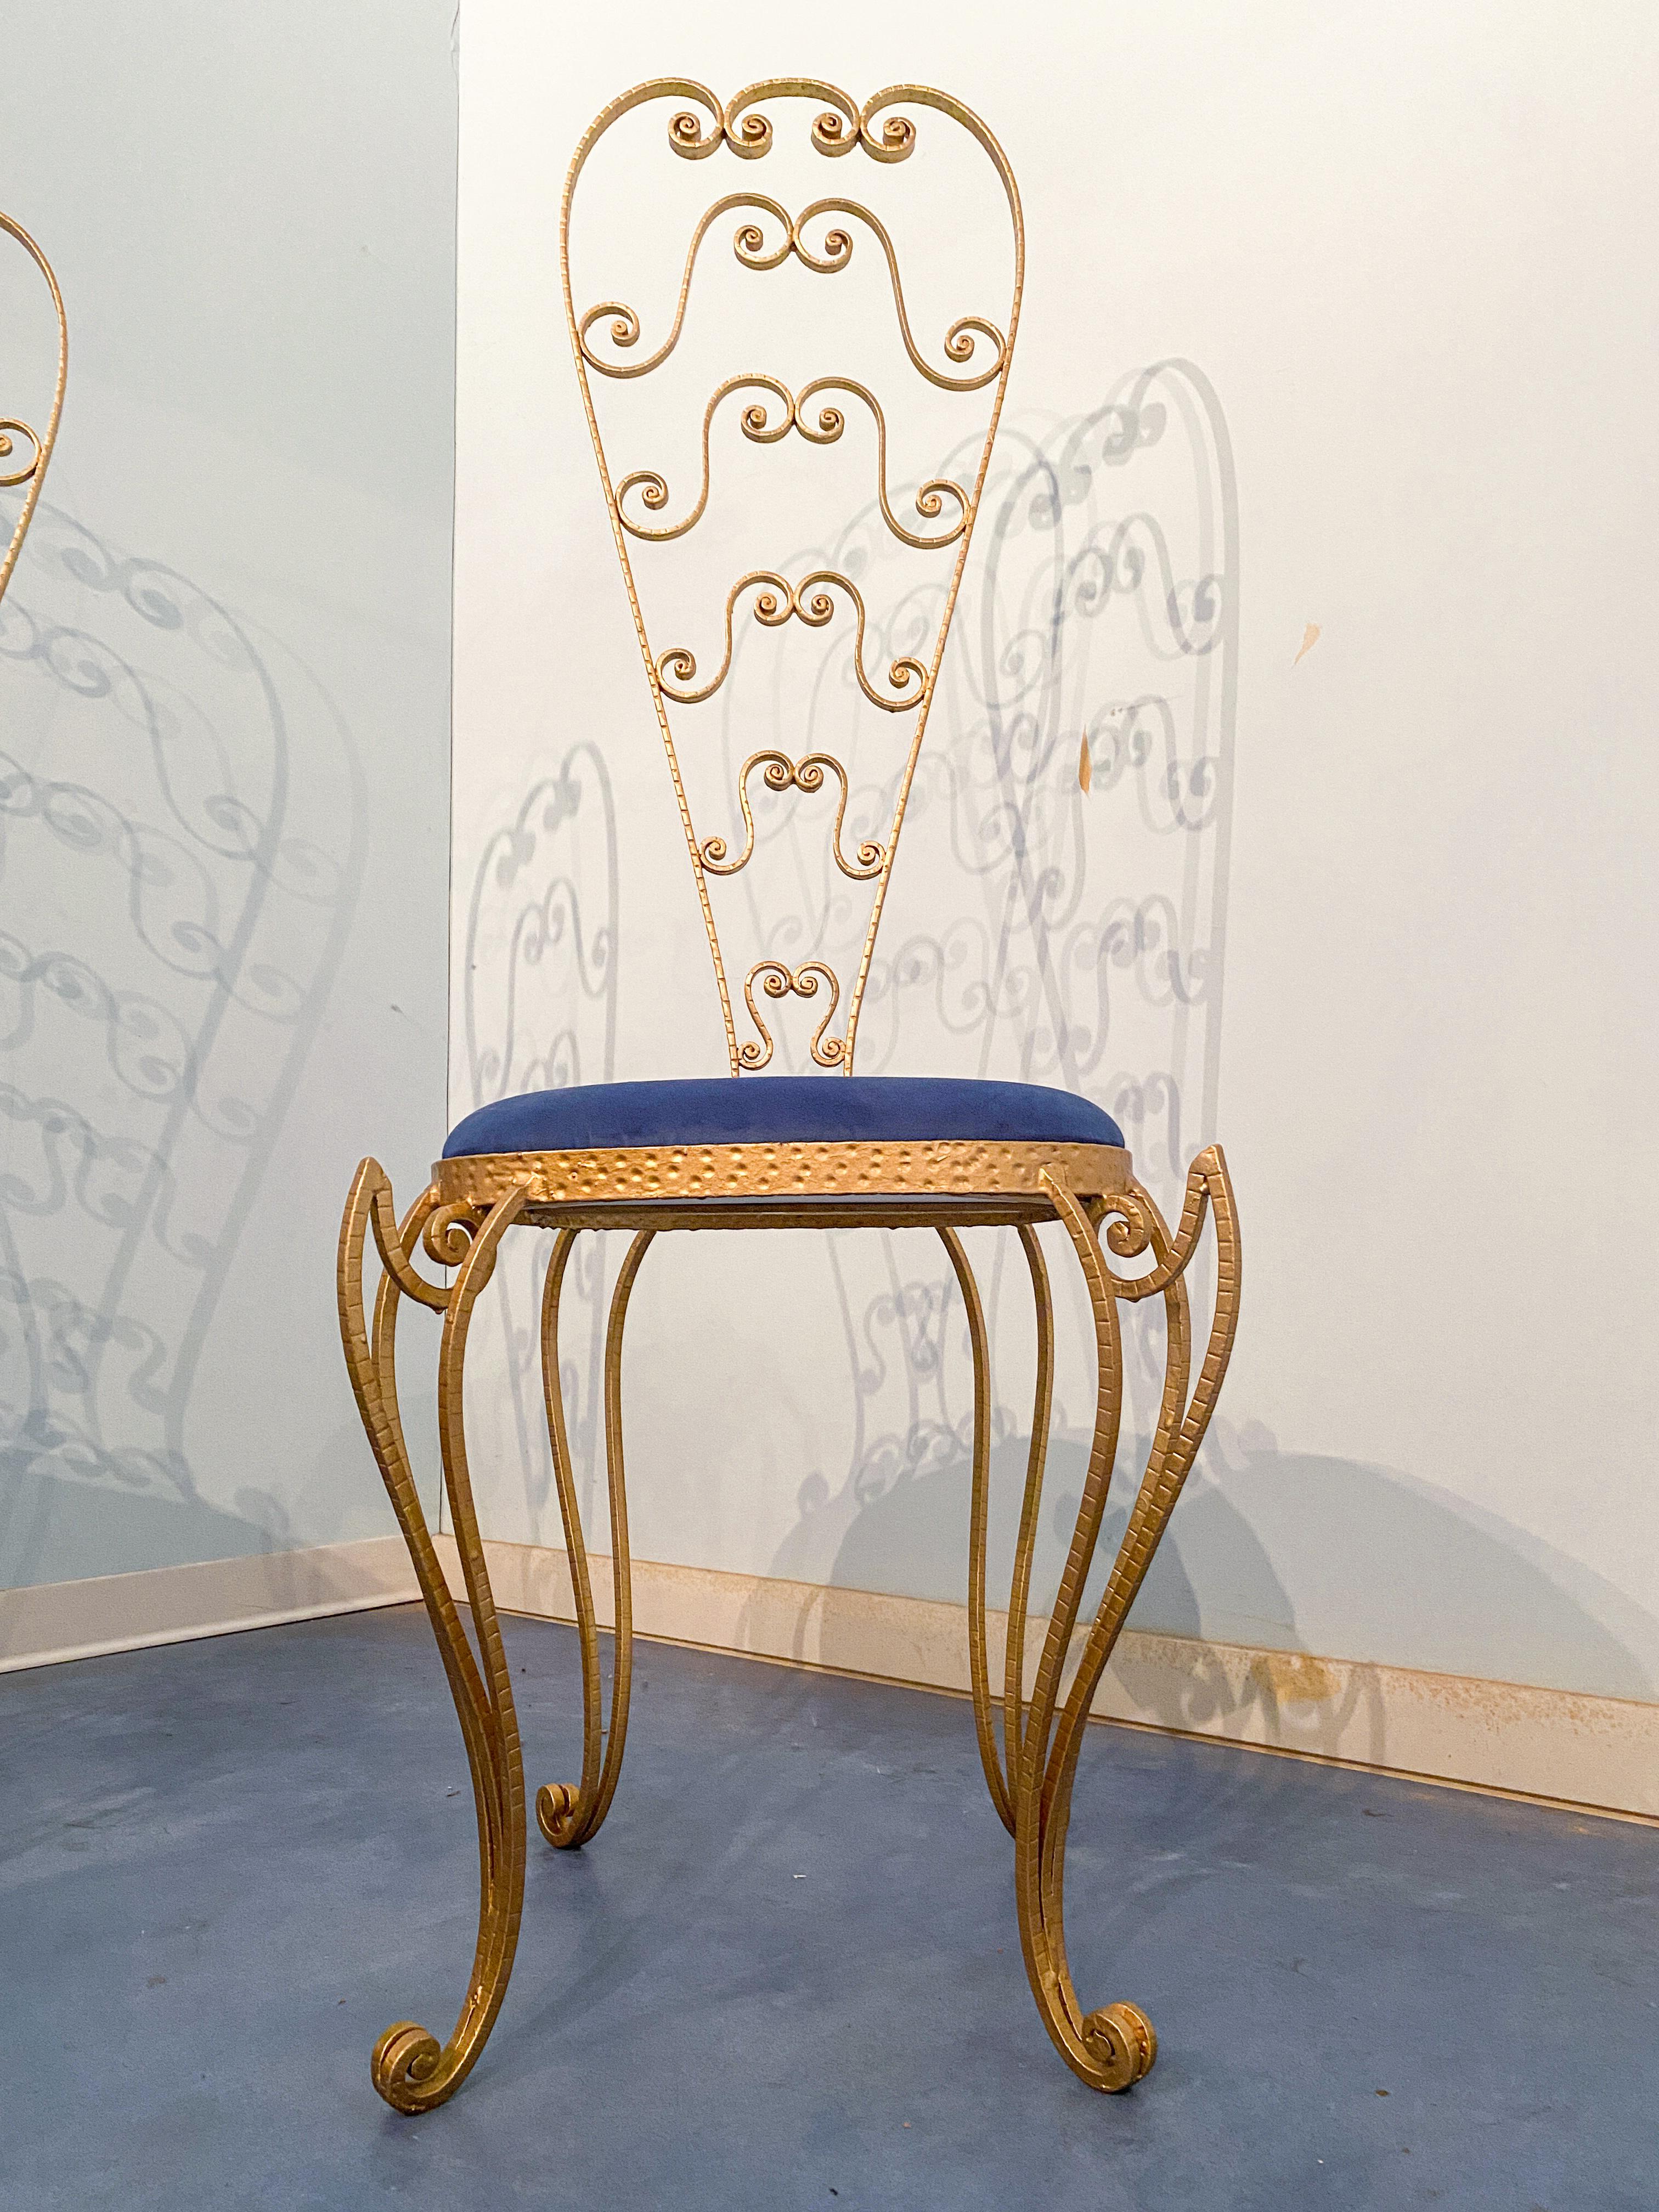 Ein Paar atemberaubende italienische Mid-Century Modern Stühle, suchen Sie nicht weiter als diese Luigi Colli Waschtischstühle. Die Stühle aus vergoldetem Eisen und mit hoher Rückenlehne sind ebenso schön wie funktional. Der tiefblaue Sitz aus